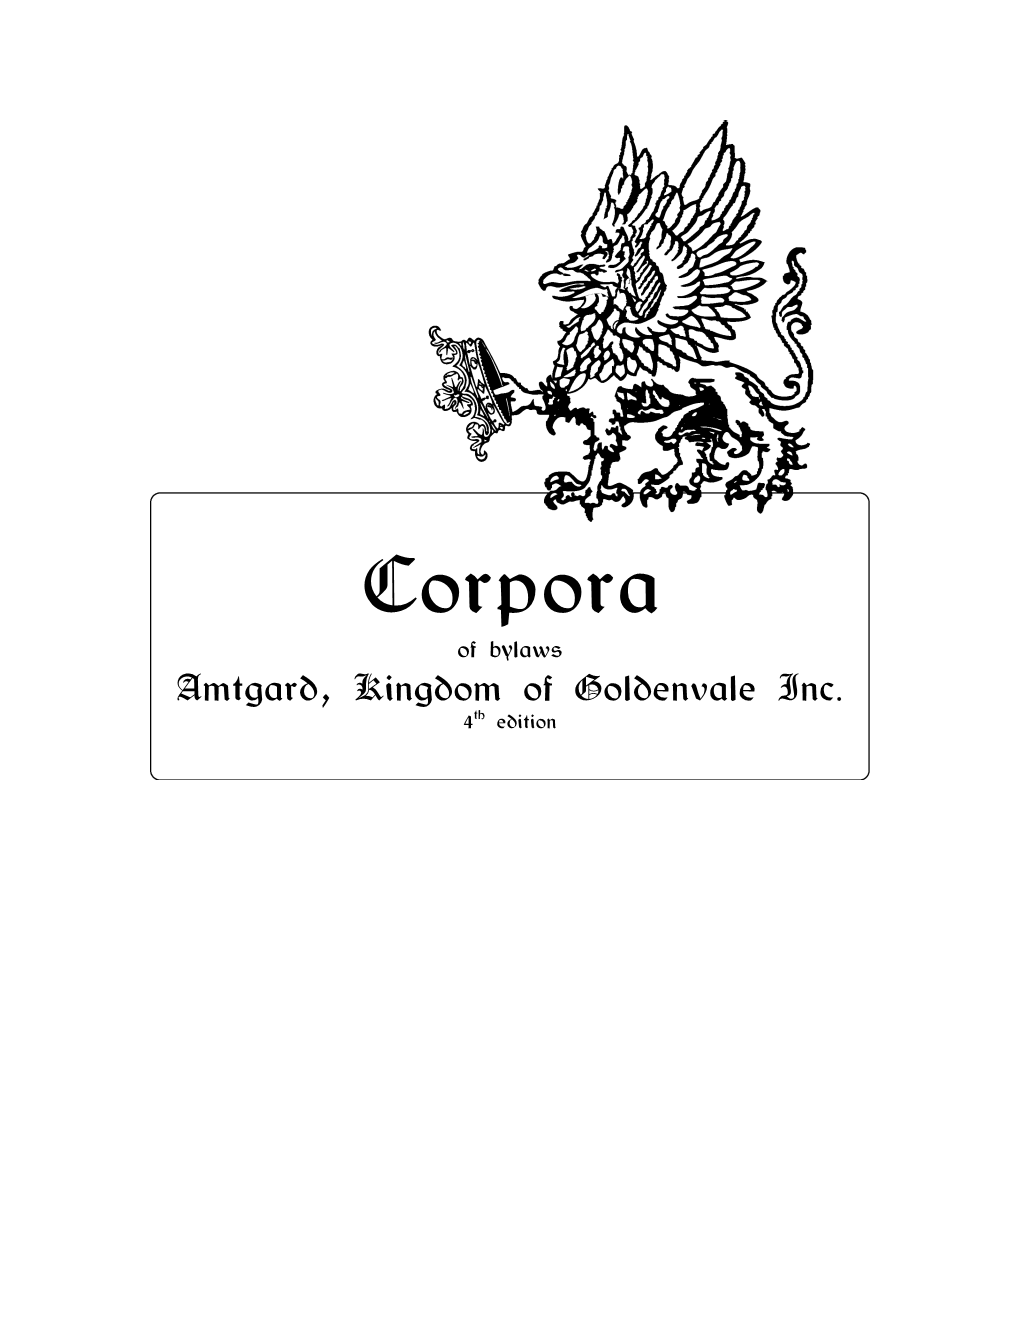 Goldenvale Corpora in 10/1994